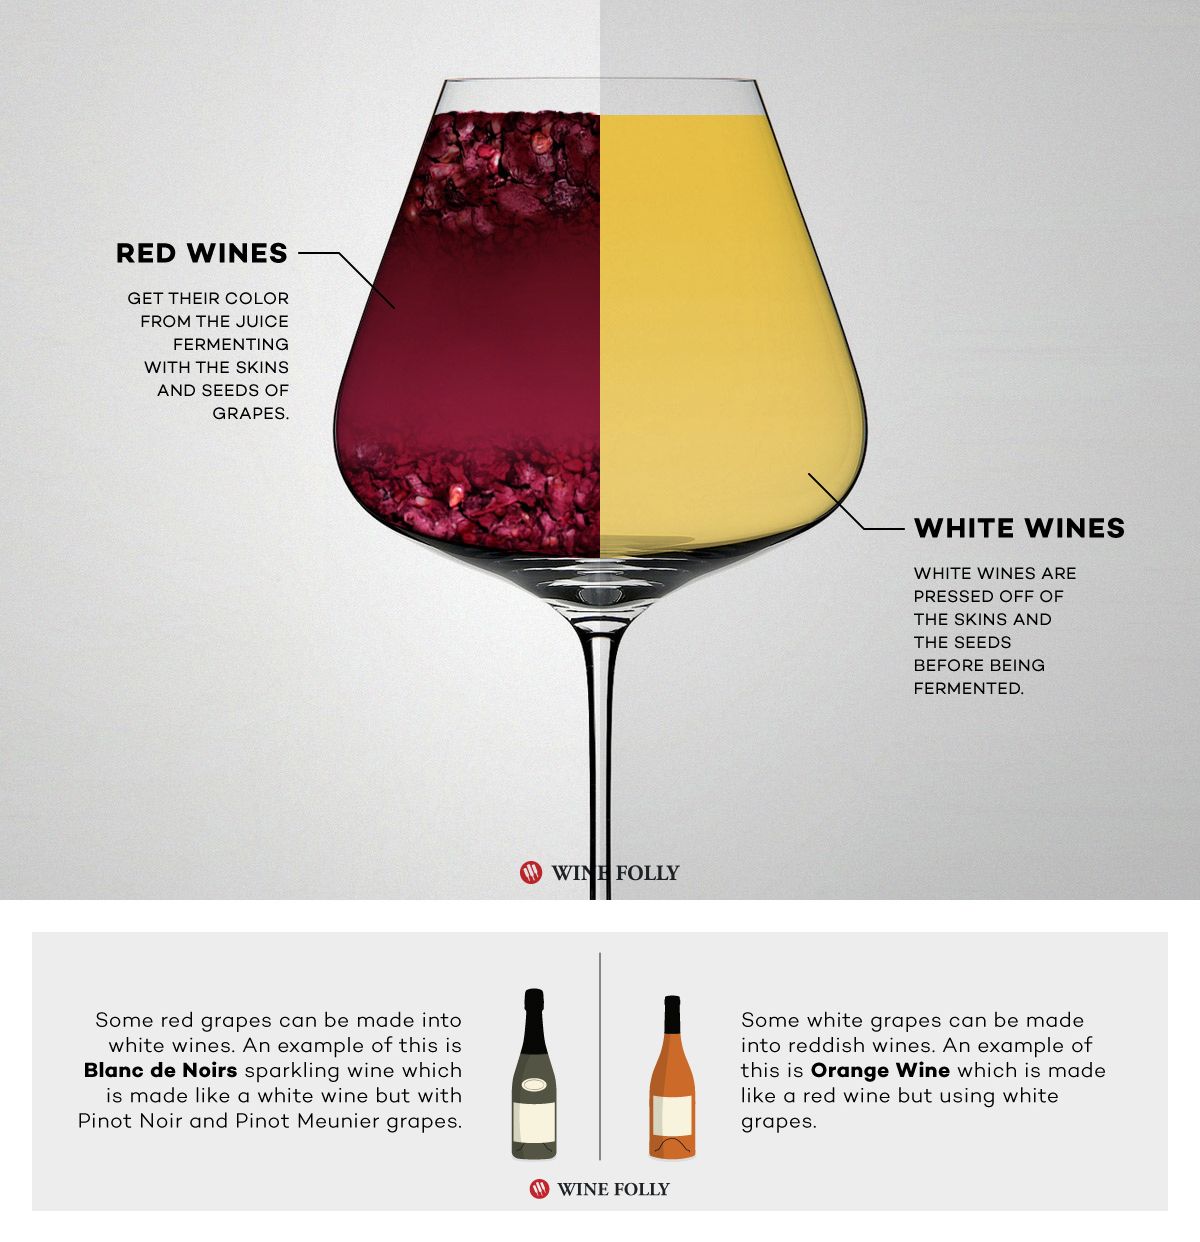 Wine Folly fermenta de manera diferente el vino tinto y el vino blanco